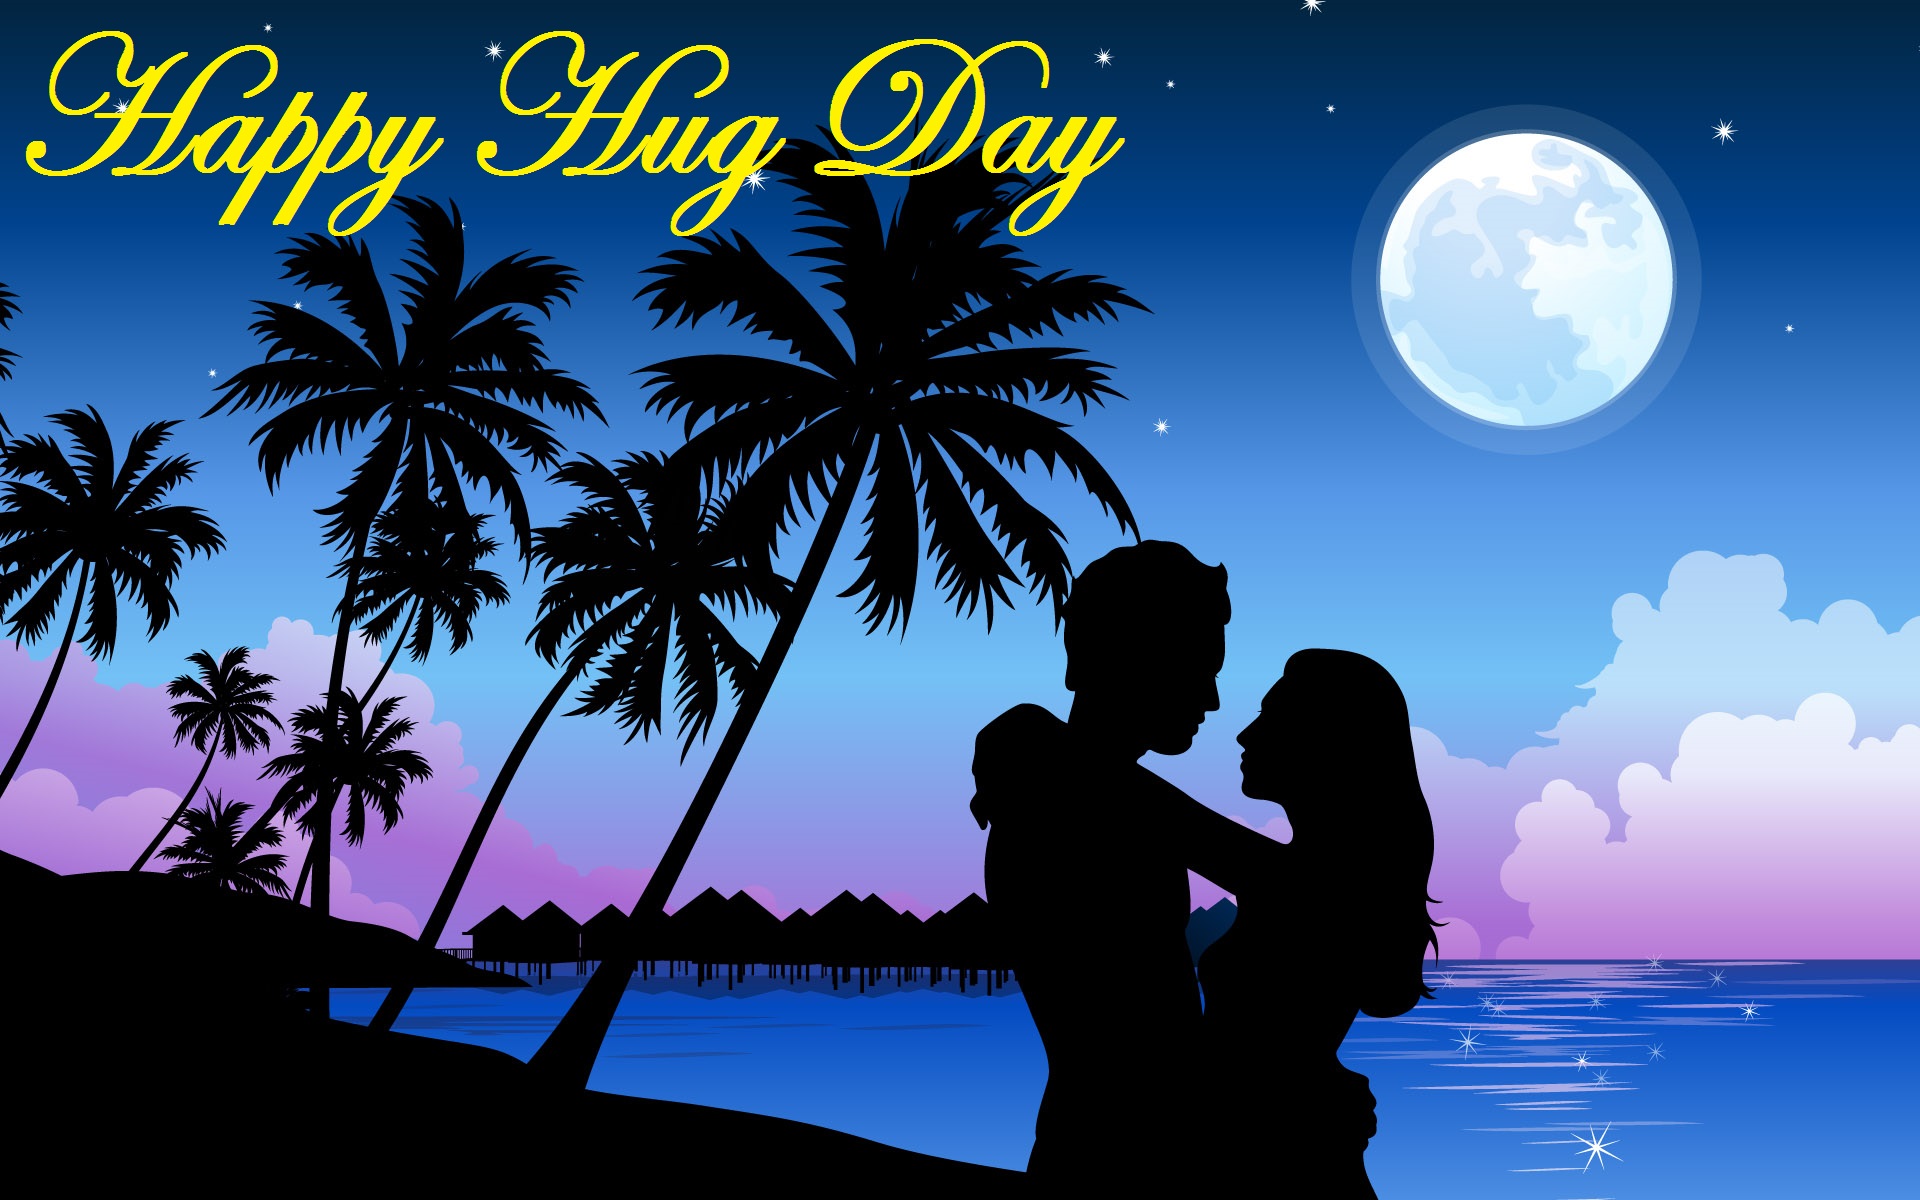 Hug Day Wallpapers for Mobile & Desktop | CGfrog